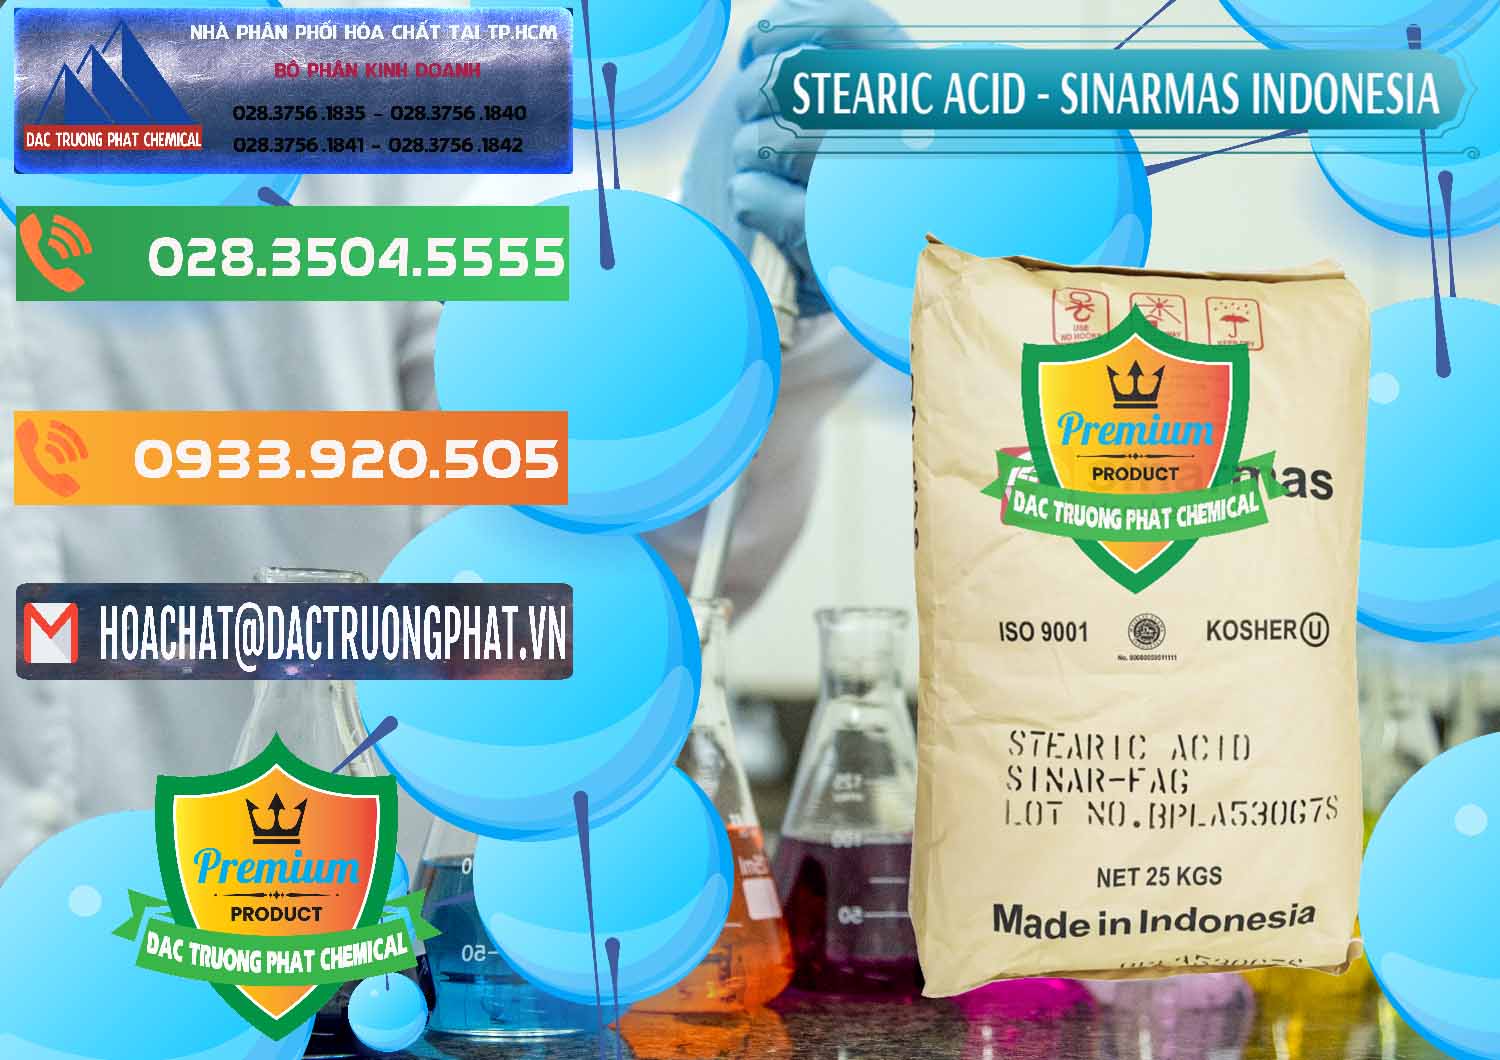 Cung cấp _ bán Axit Stearic - Stearic Acid Sinarmas Indonesia - 0389 - Công ty nhập khẩu ( phân phối ) hóa chất tại TP.HCM - hoachatxulynuoc.com.vn